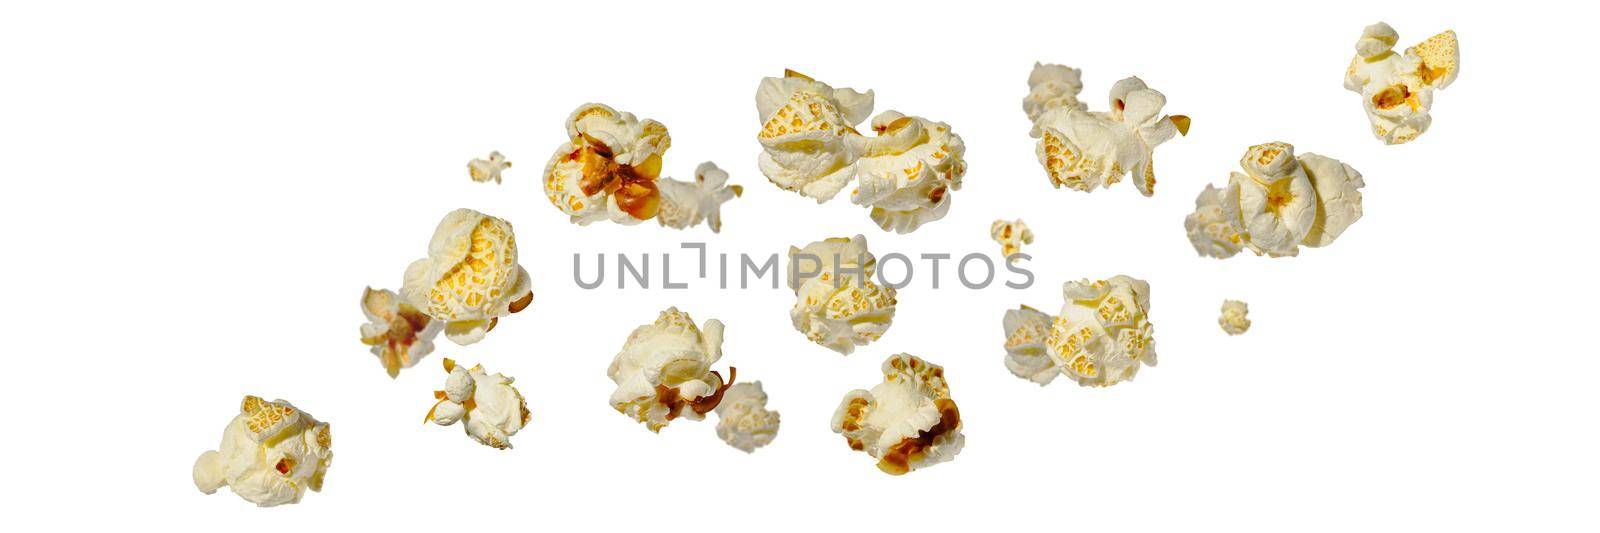 Falling popcorn, isolated on white background. food background.